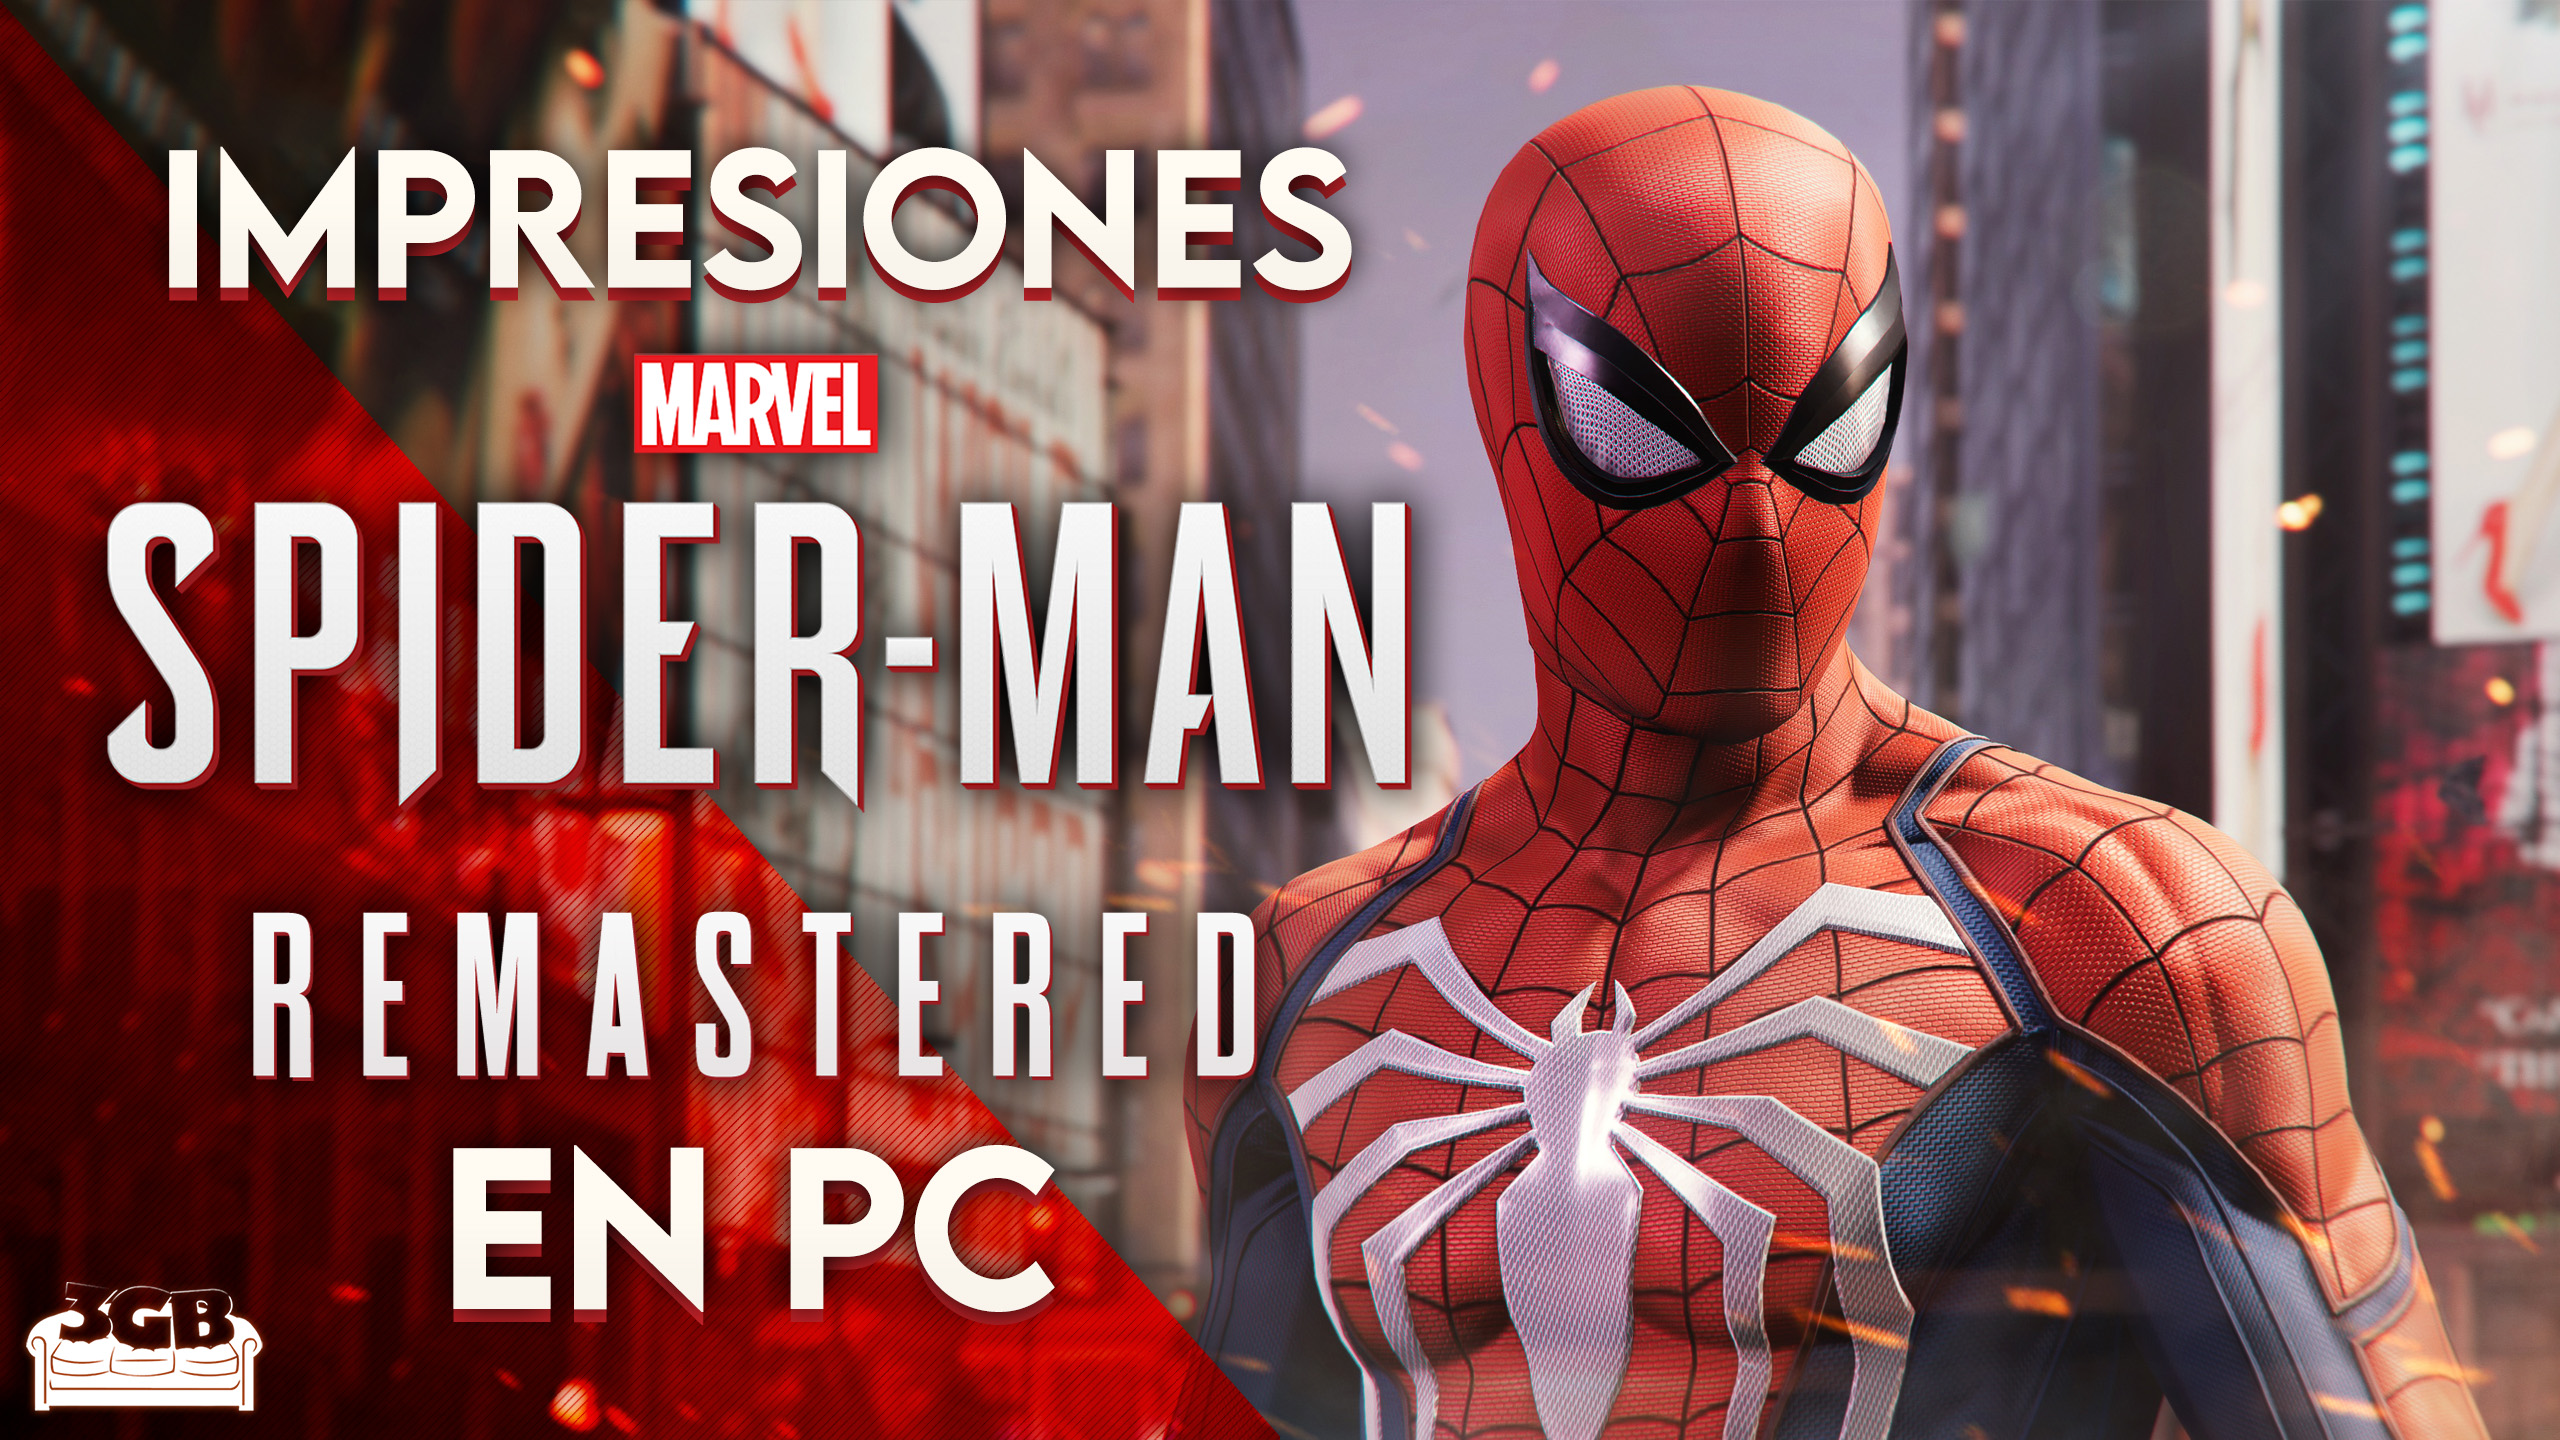 Impresiones: Marvel’s Spider-Man Remastred en PC – El Competente Hombre Araña